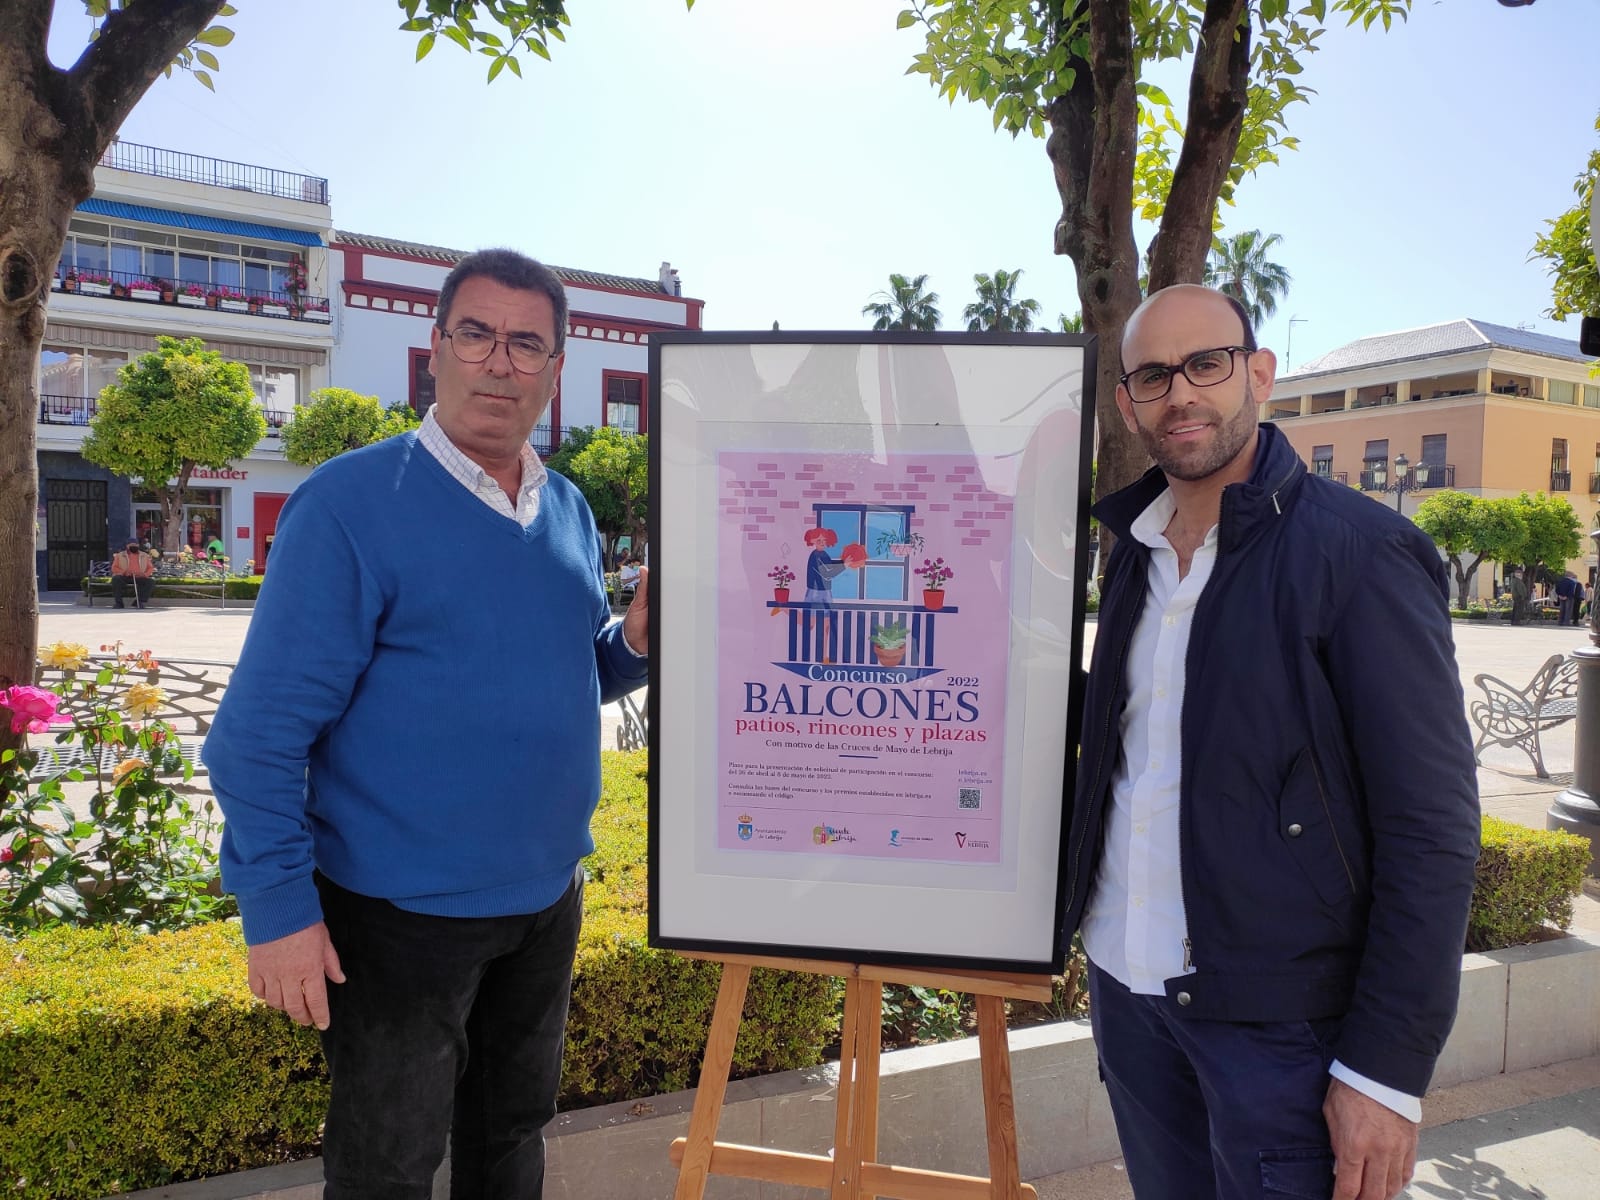 La nueva edición del concurso de balcones, patios, plazas y rincones se celebrará del 6 al 14M